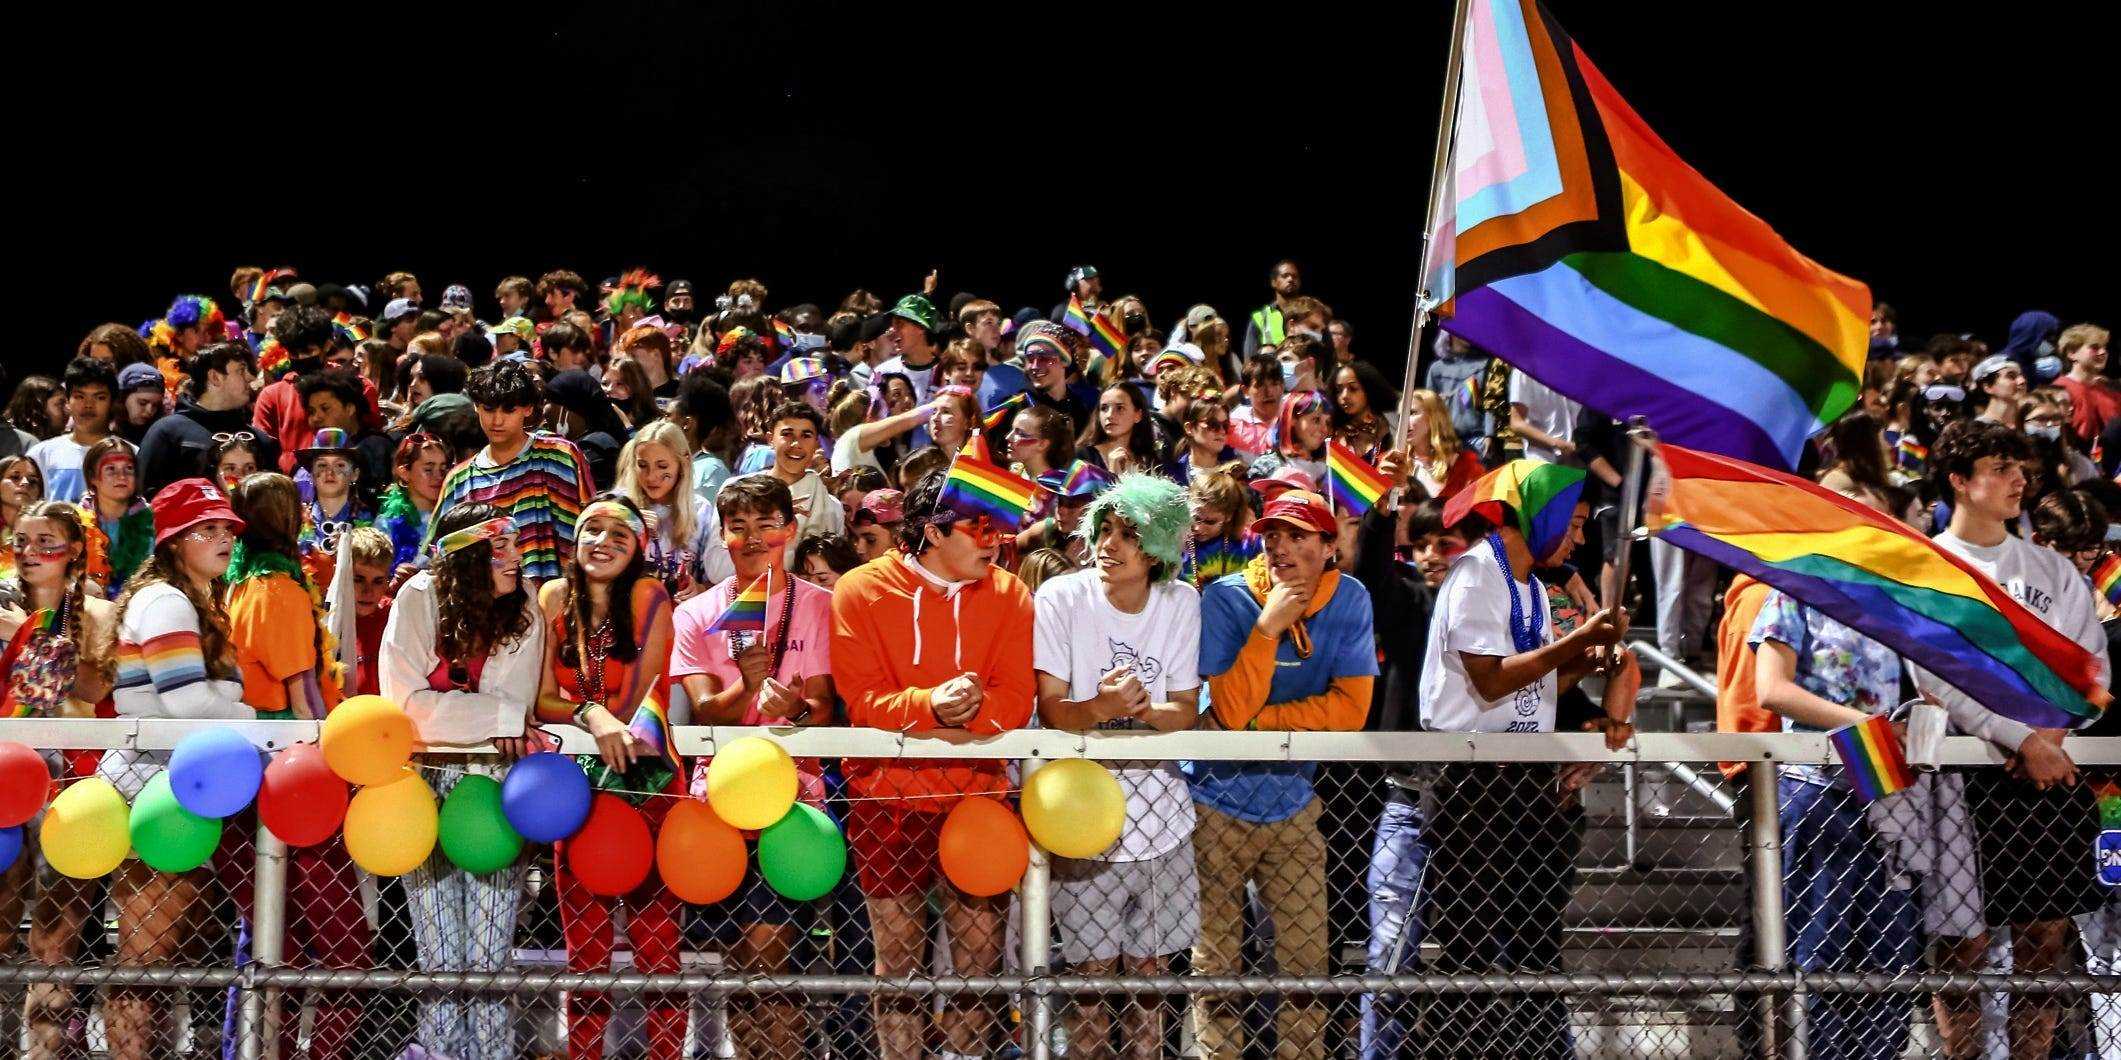 Die Menge beim Heimkehrspiel der Burlington High School jubelt den Künstlern zu, während sie in Regenbogenfarben geschmückt sind.